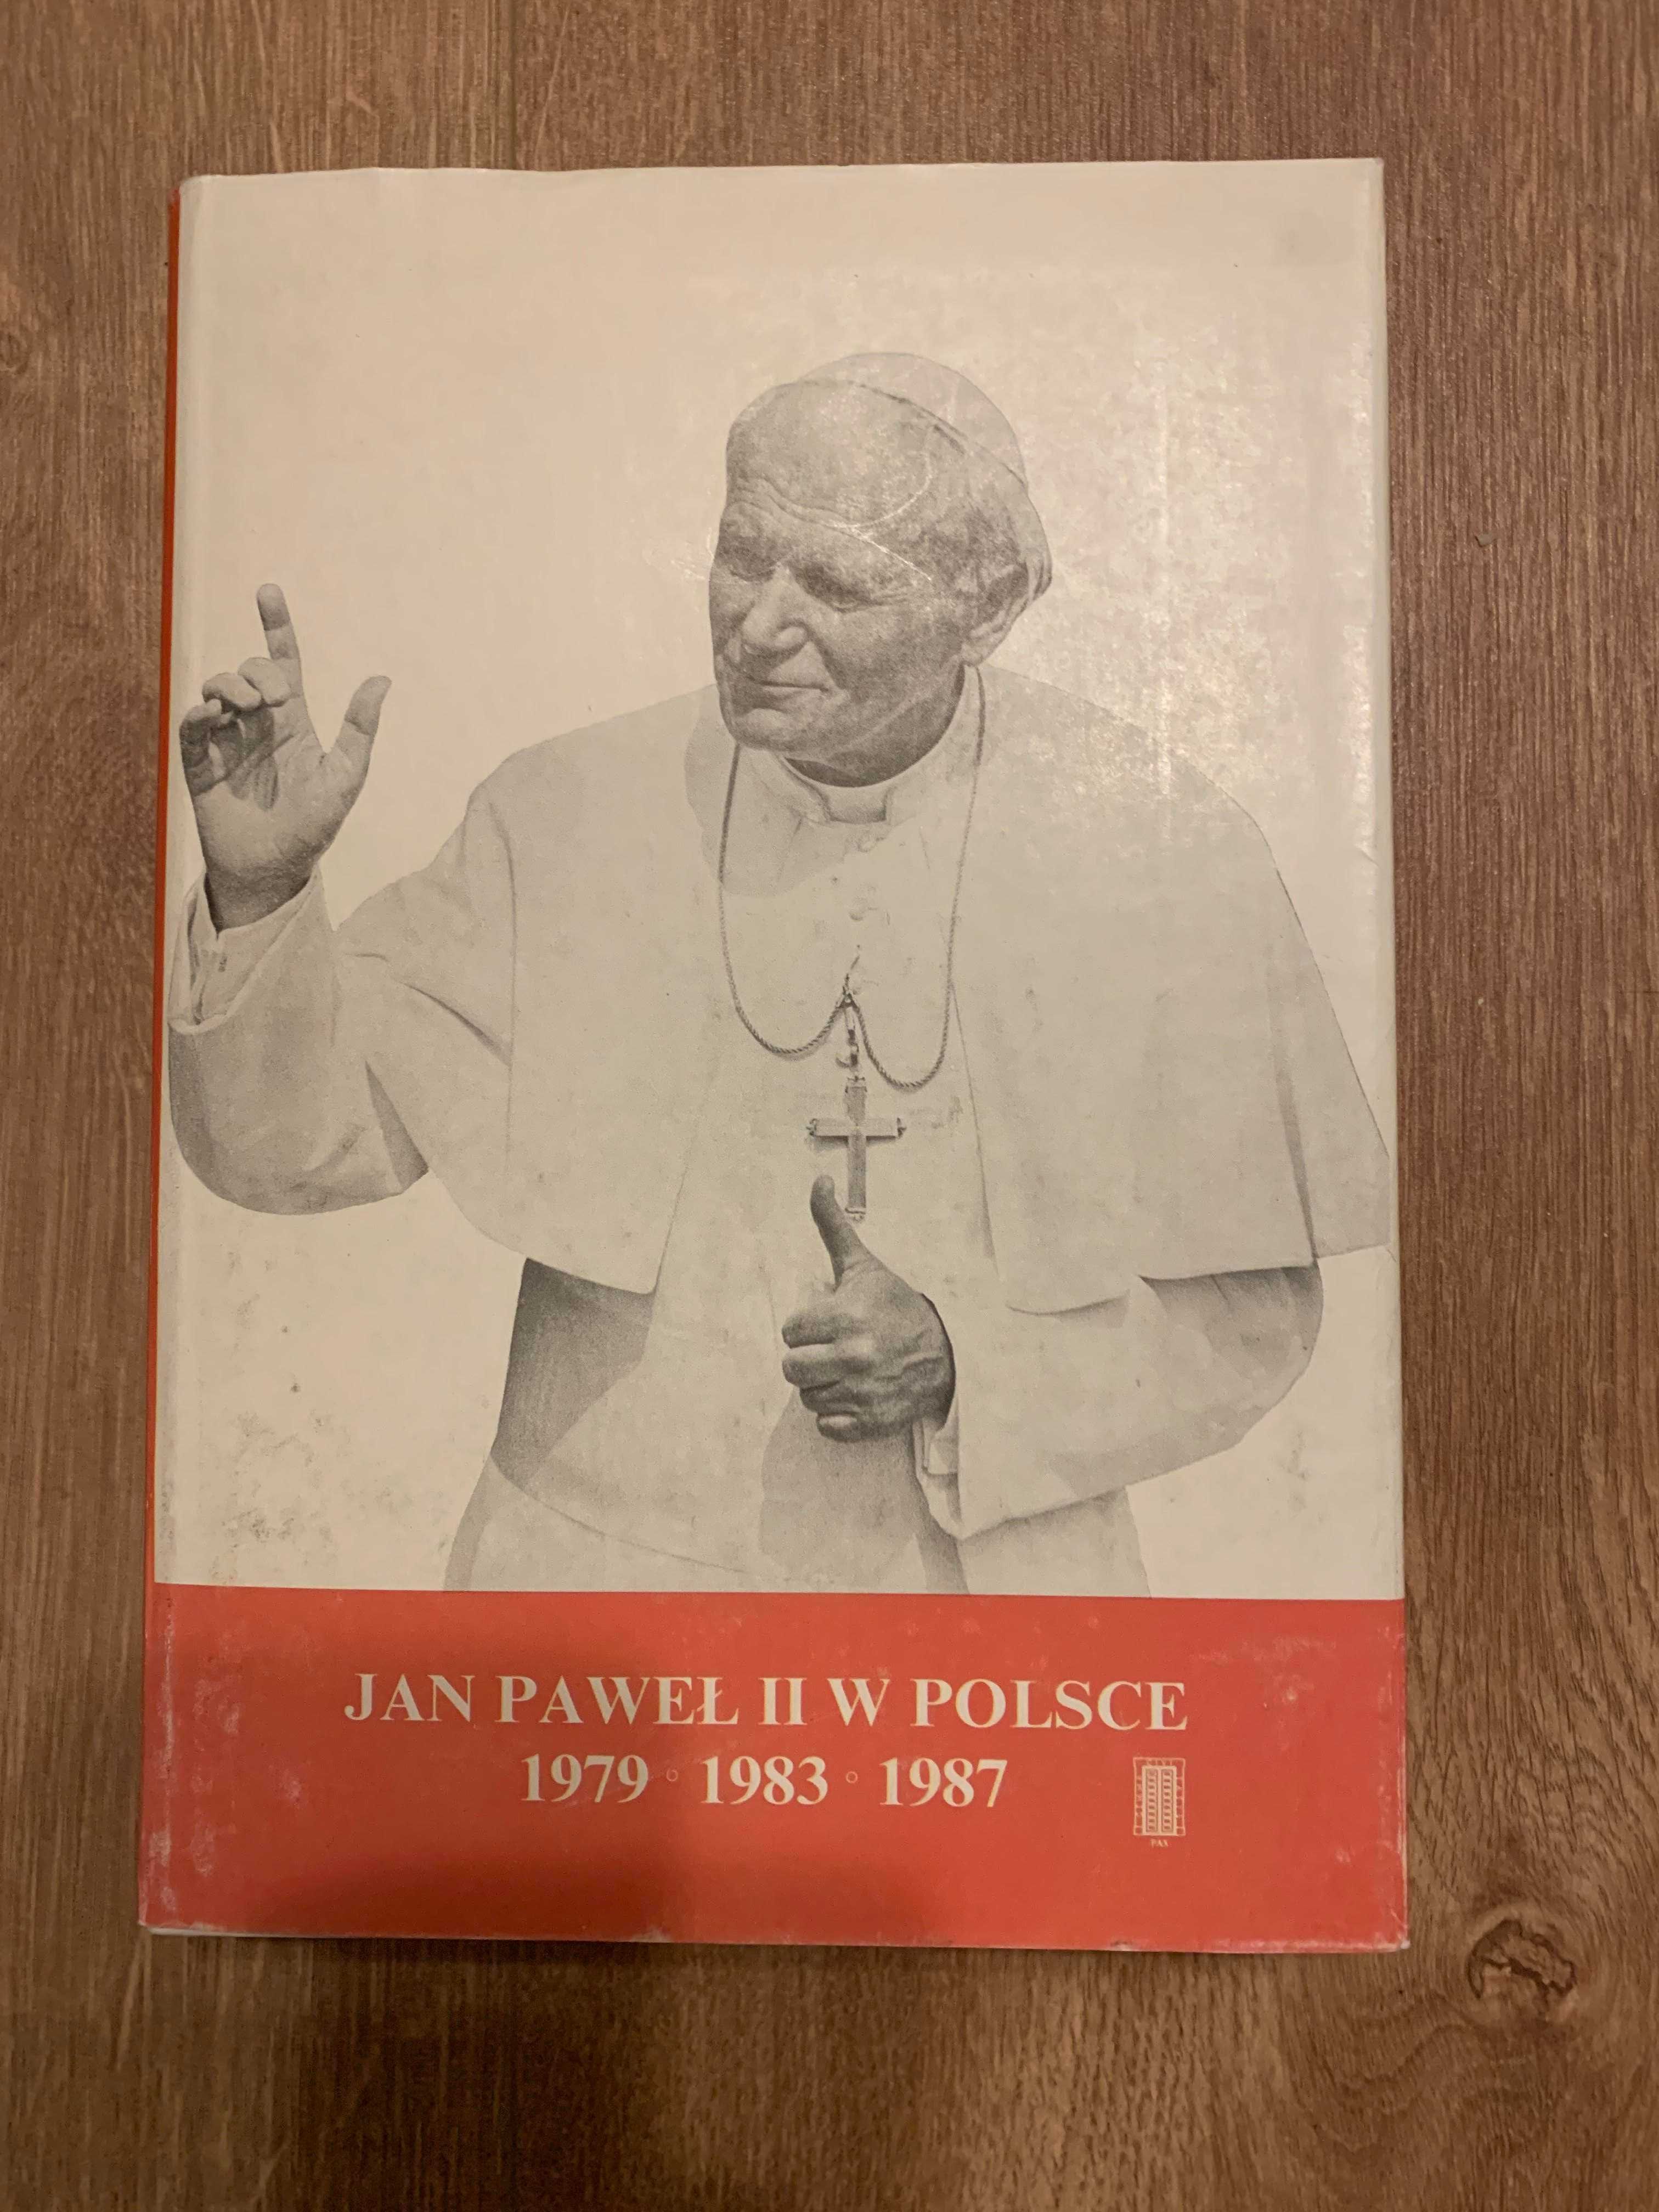 JAN PAWEŁ II W POLSCE, 1979, 1983, 1987, przemówienia i homilie.